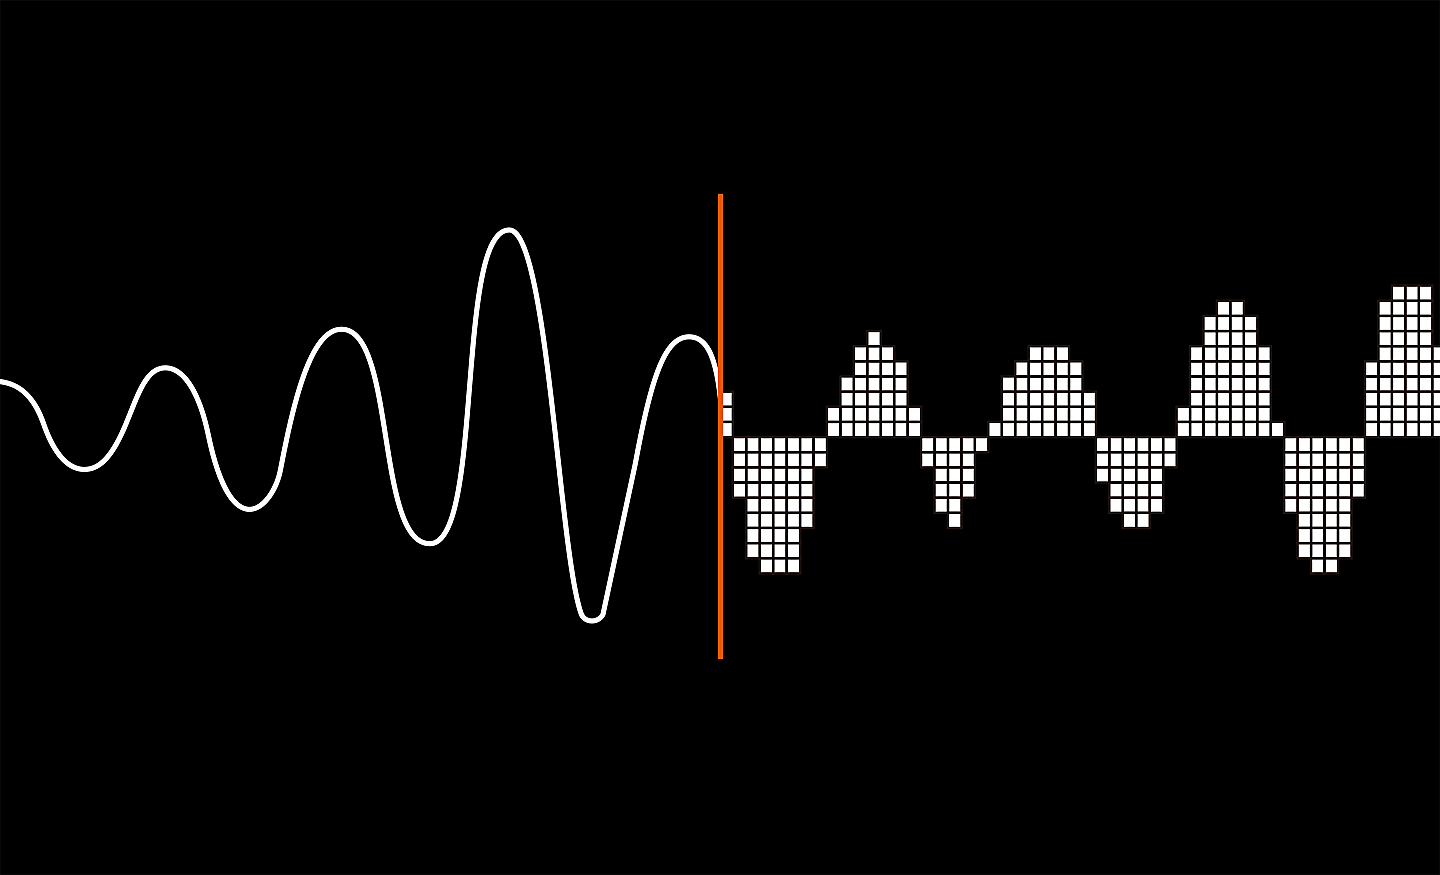 Illustrations représentant une onde sonore pour montrer comment le son analogique est converti en son numérique.